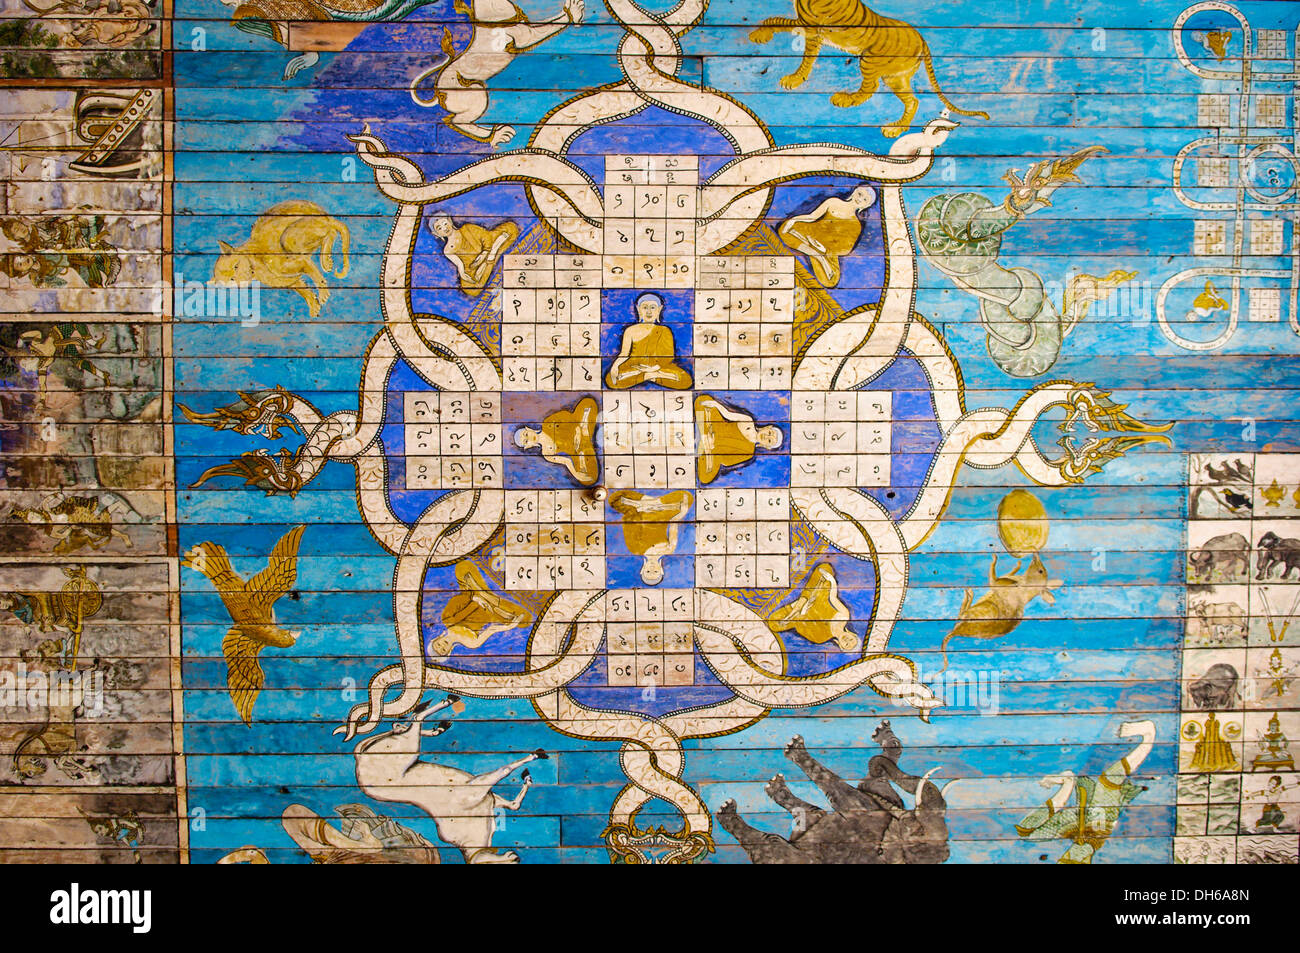 Fresque astrologique, calendrier sur un toit, Wat Jet Yot, Chiang Rai, Thaïlande, Asie du Sud, Asie Banque D'Images